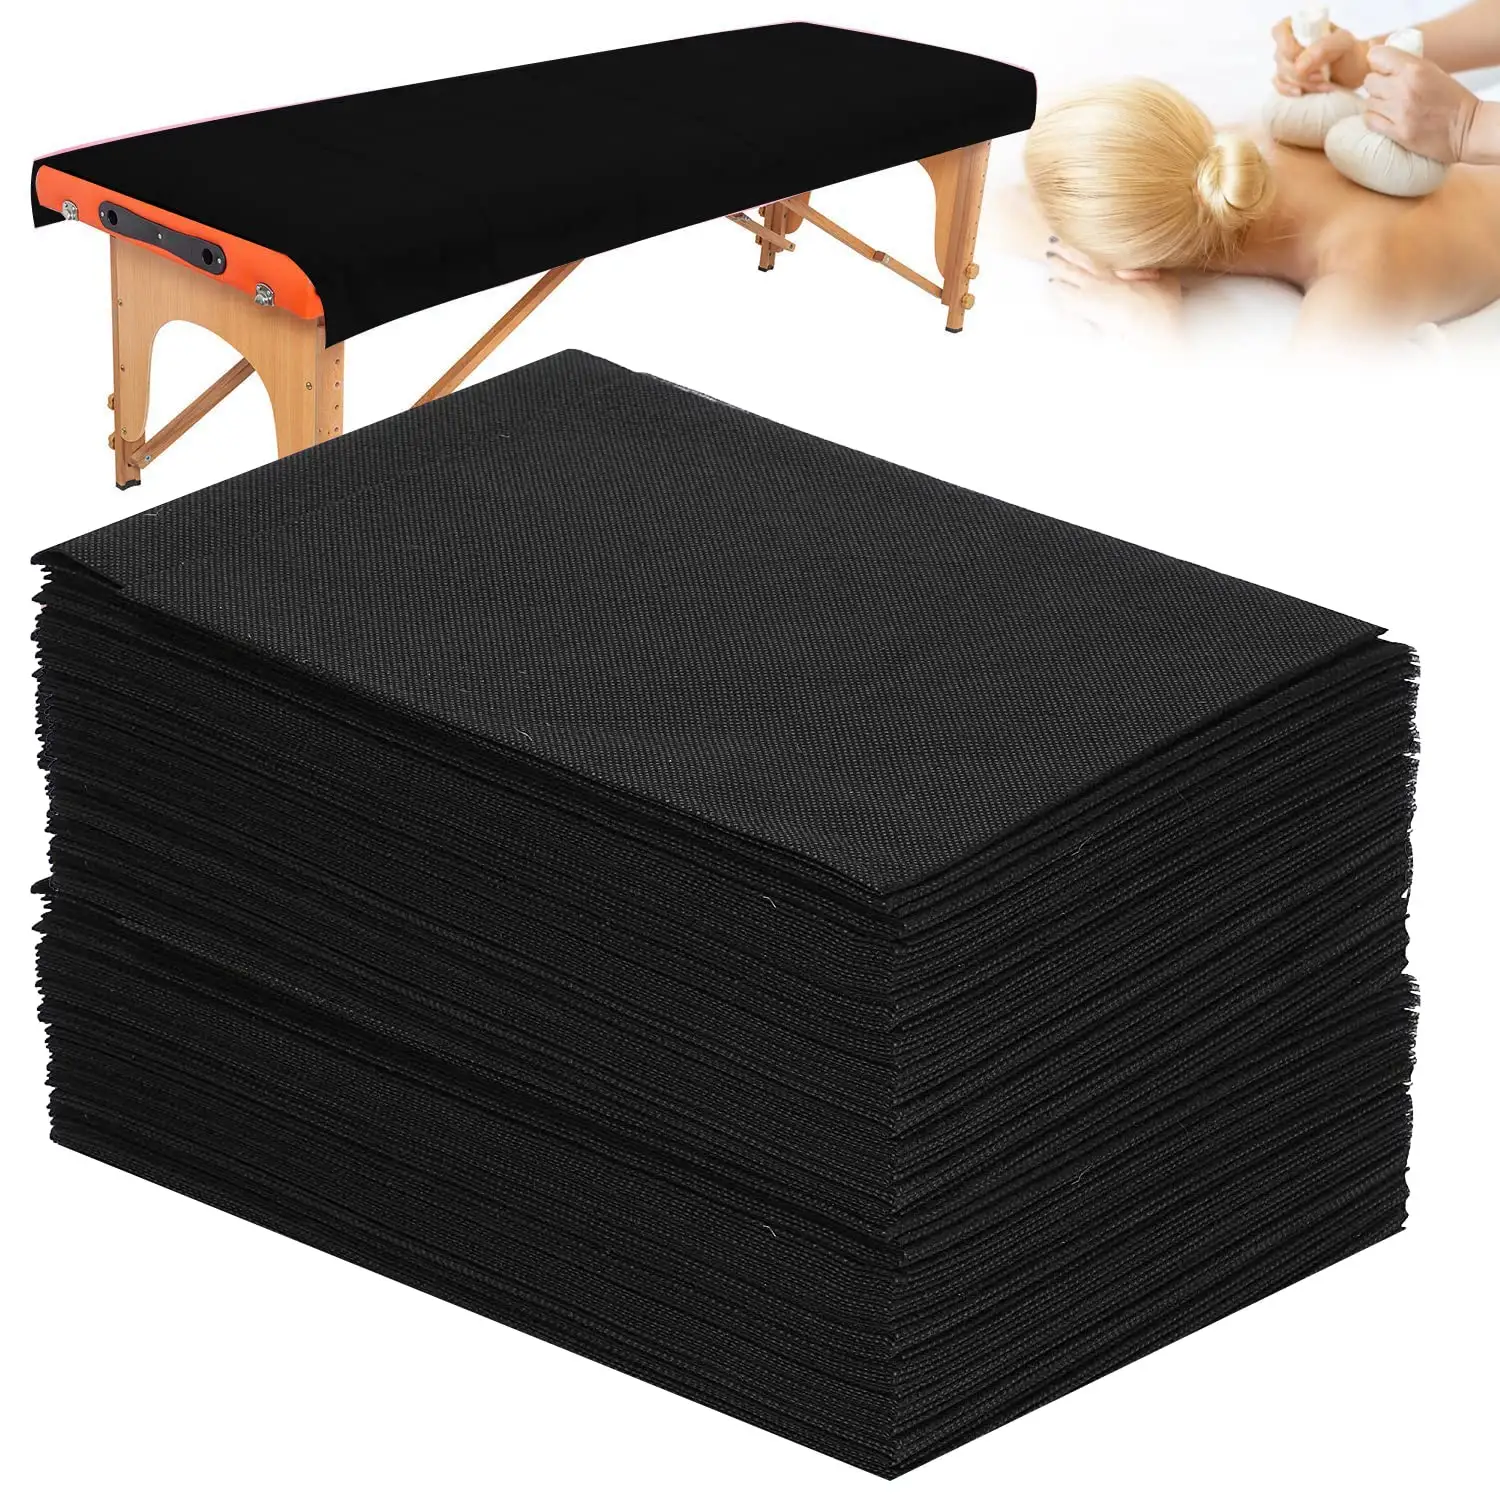 Draps de lit jetables Non tissés couverture de lit Spa Table de Massage drap noir bleu blanc rose couverture de lit imperméable draps plats